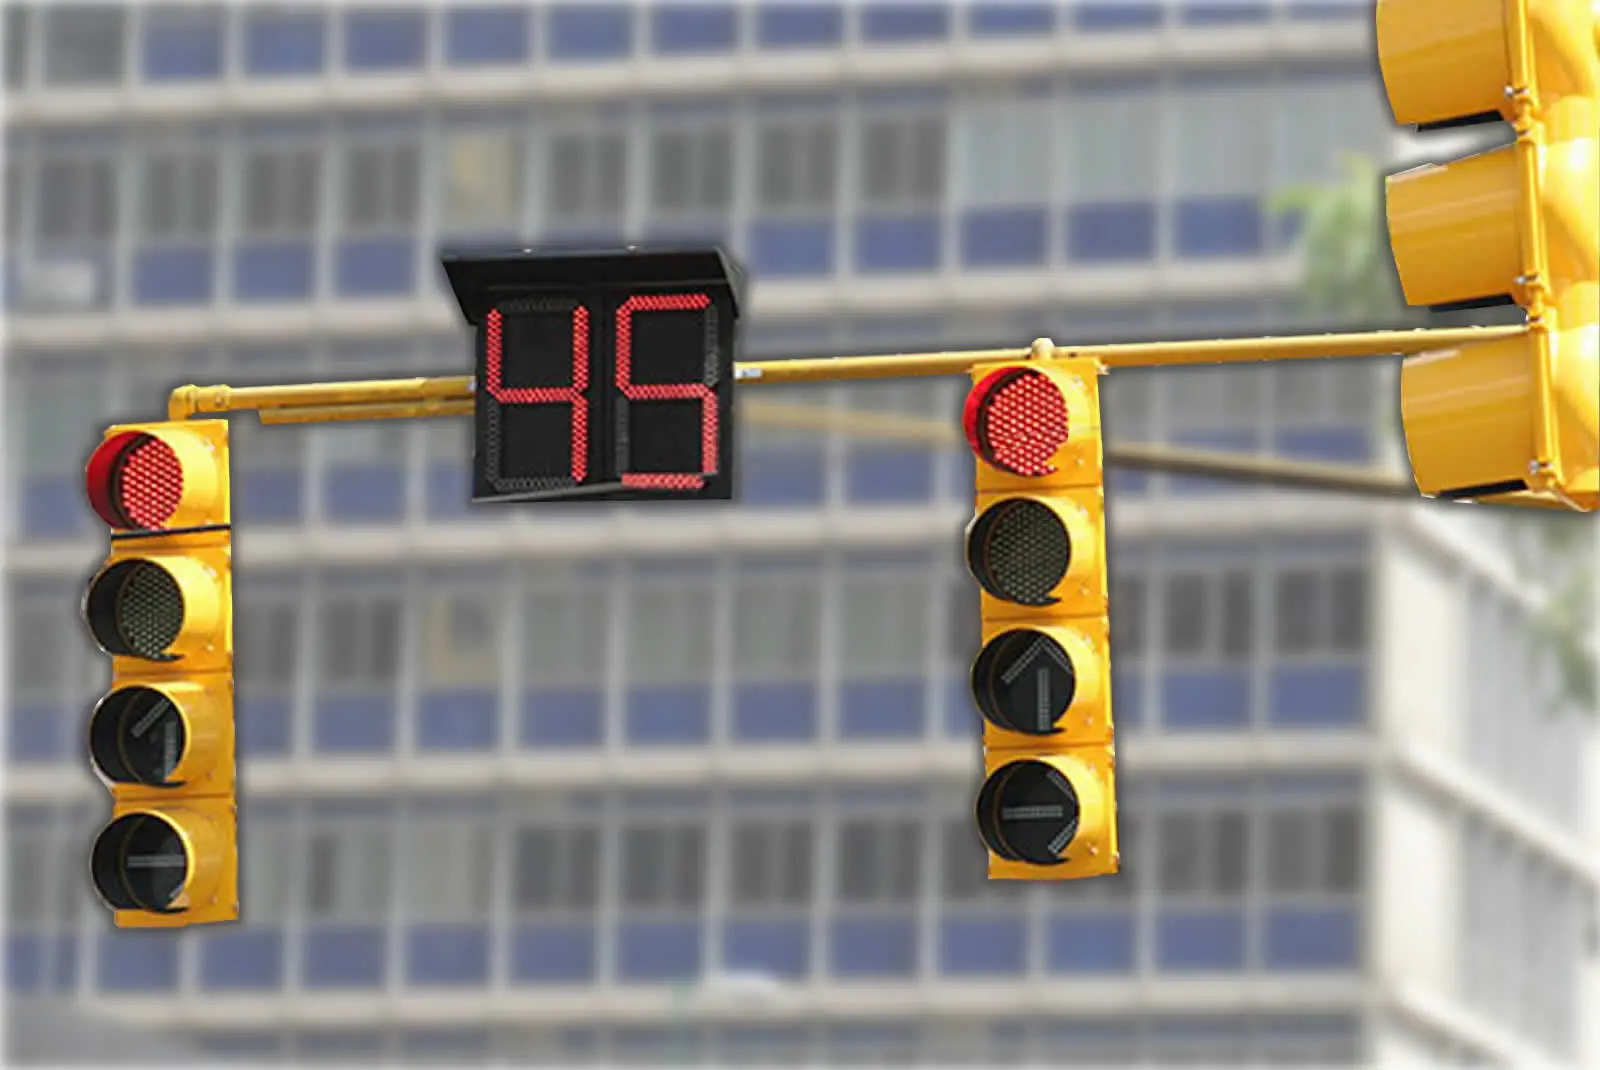 costo de traer el semaforo inteligente - Por qué los semáforos son tan caros